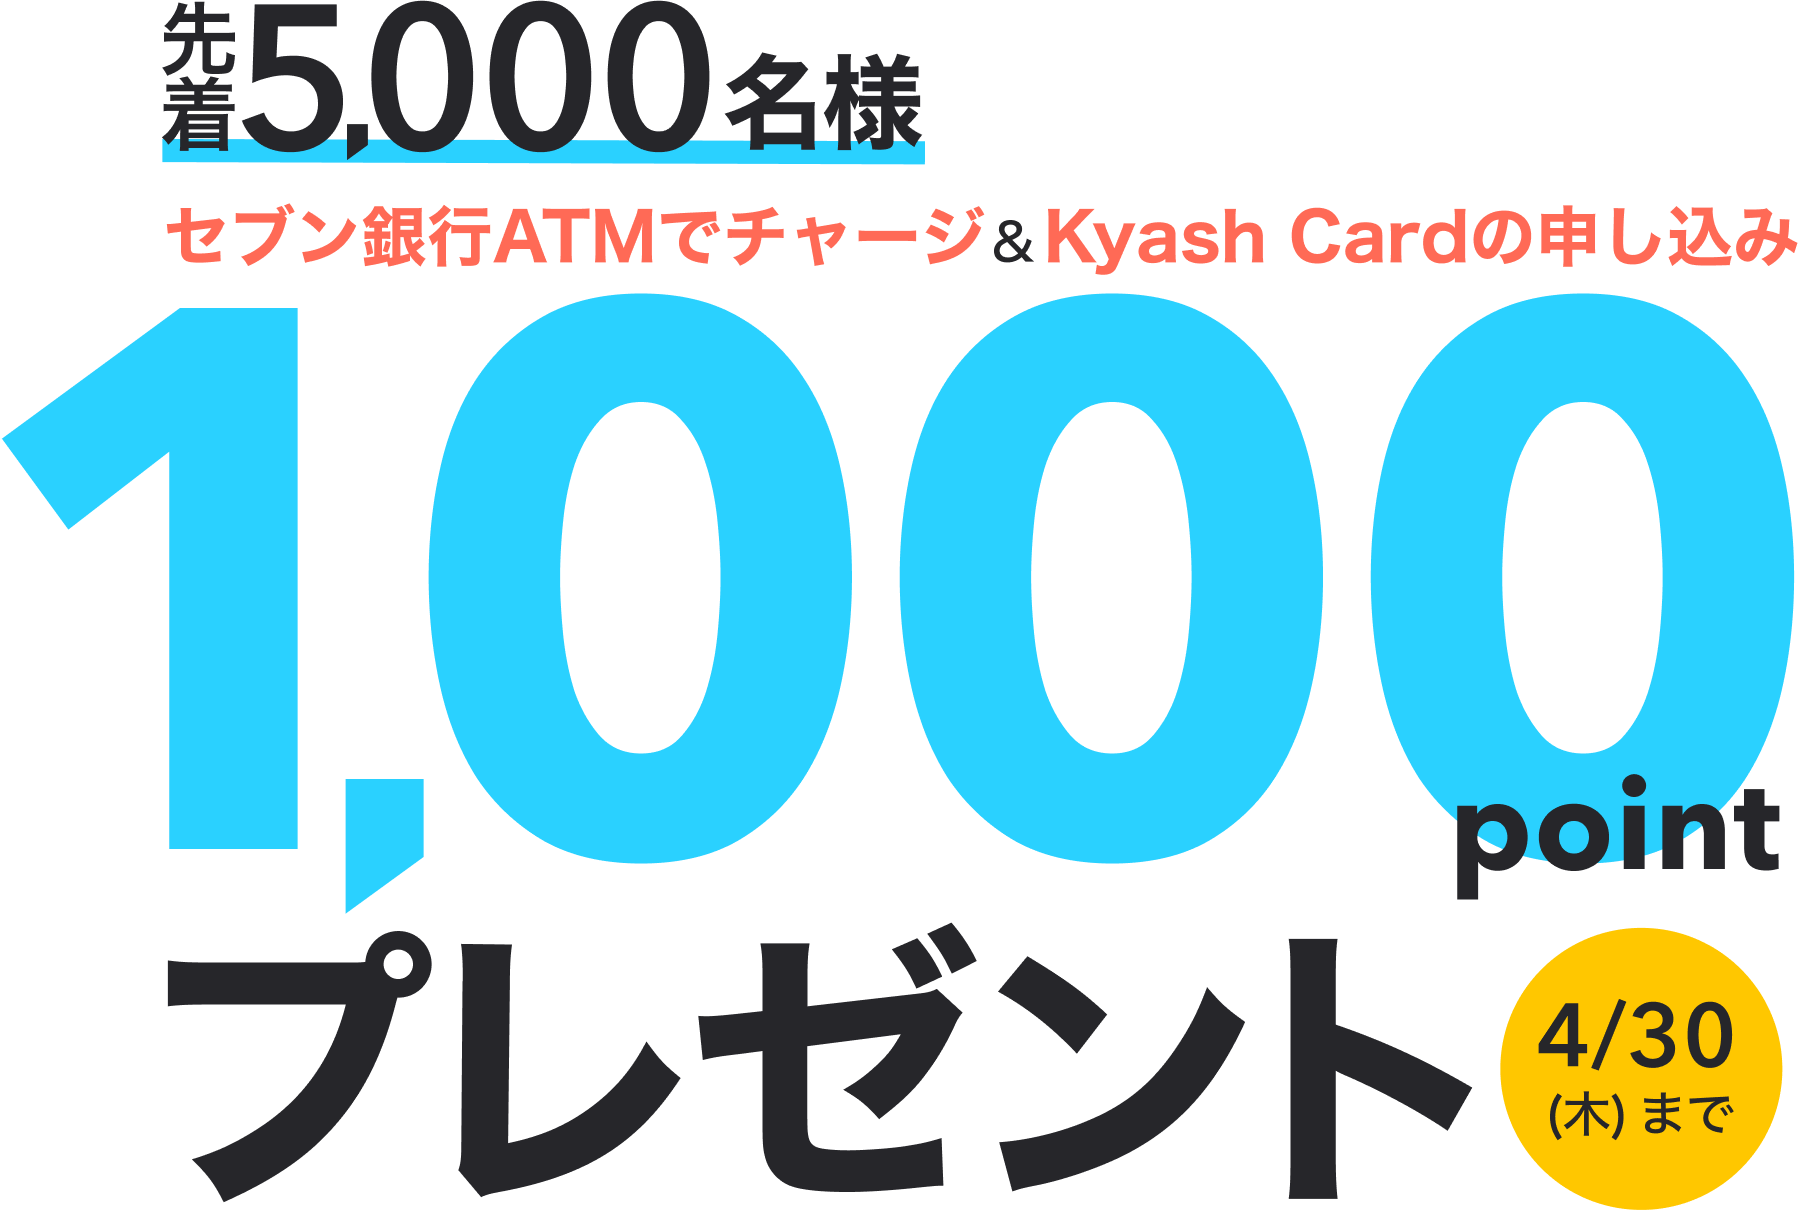 先着5000名様セブン銀行ATMチャージ&KyashCard申込みで1000ポイントプレゼント